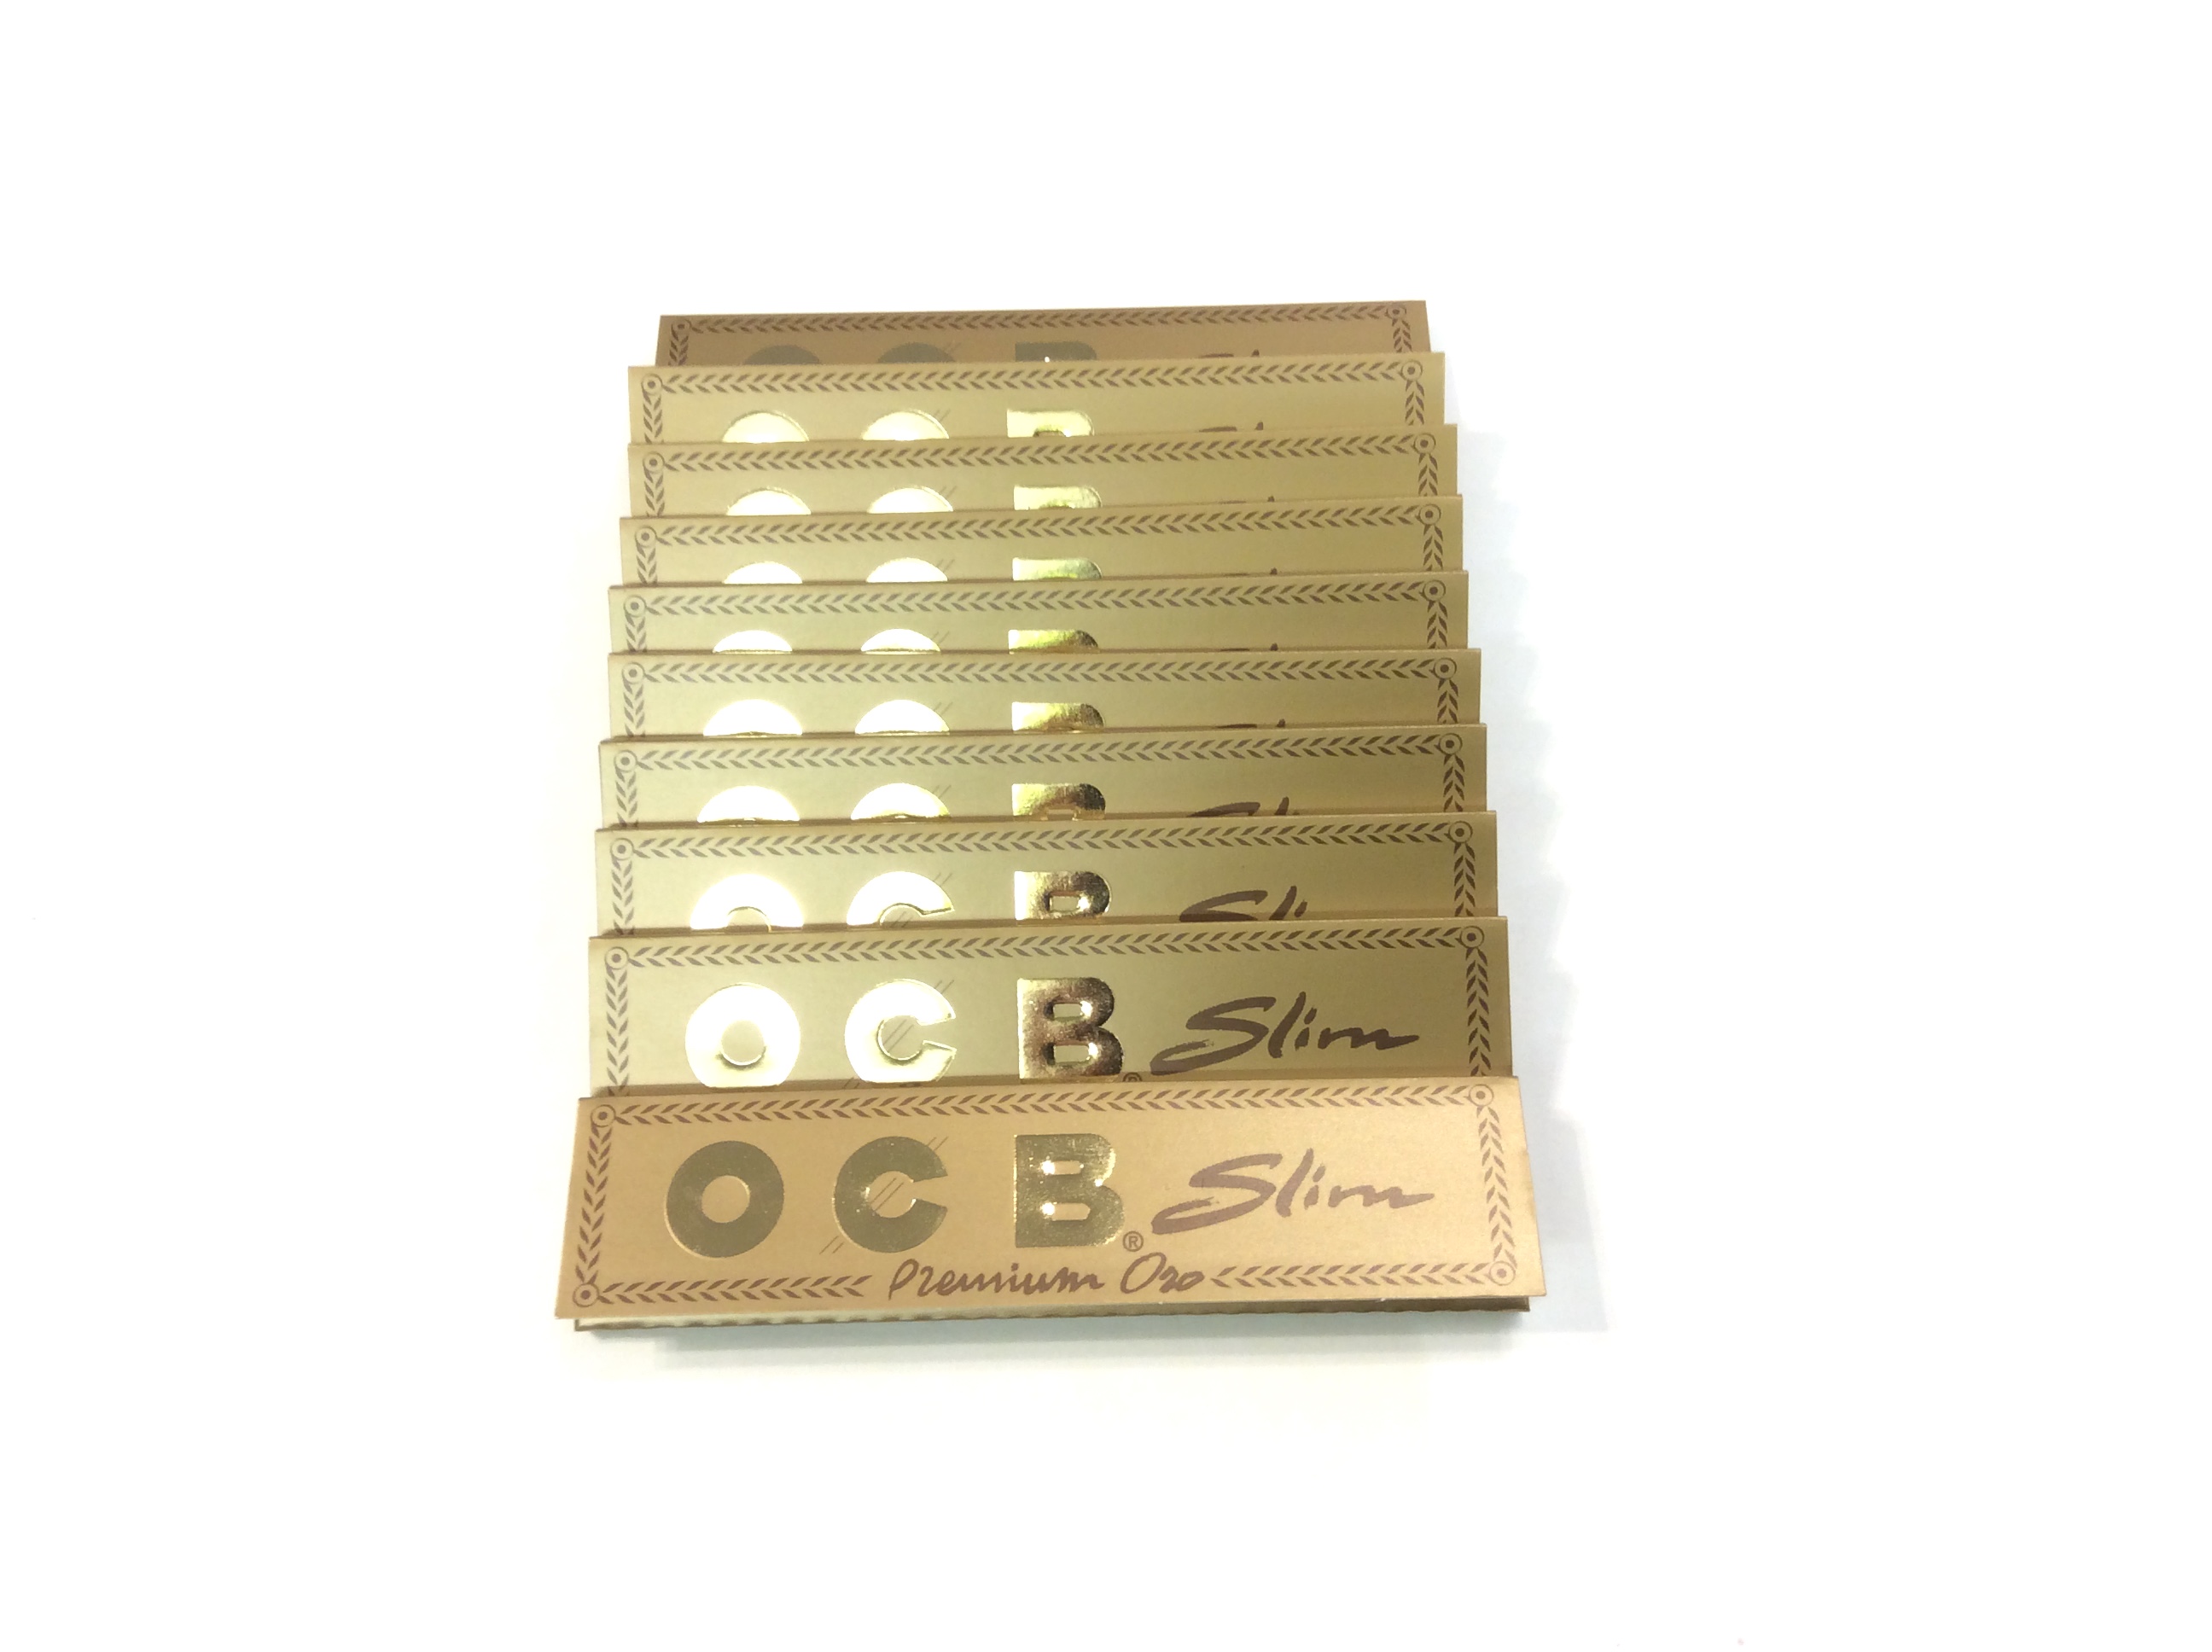 OCB Slim Gold par 50, disponible sur S Factory !